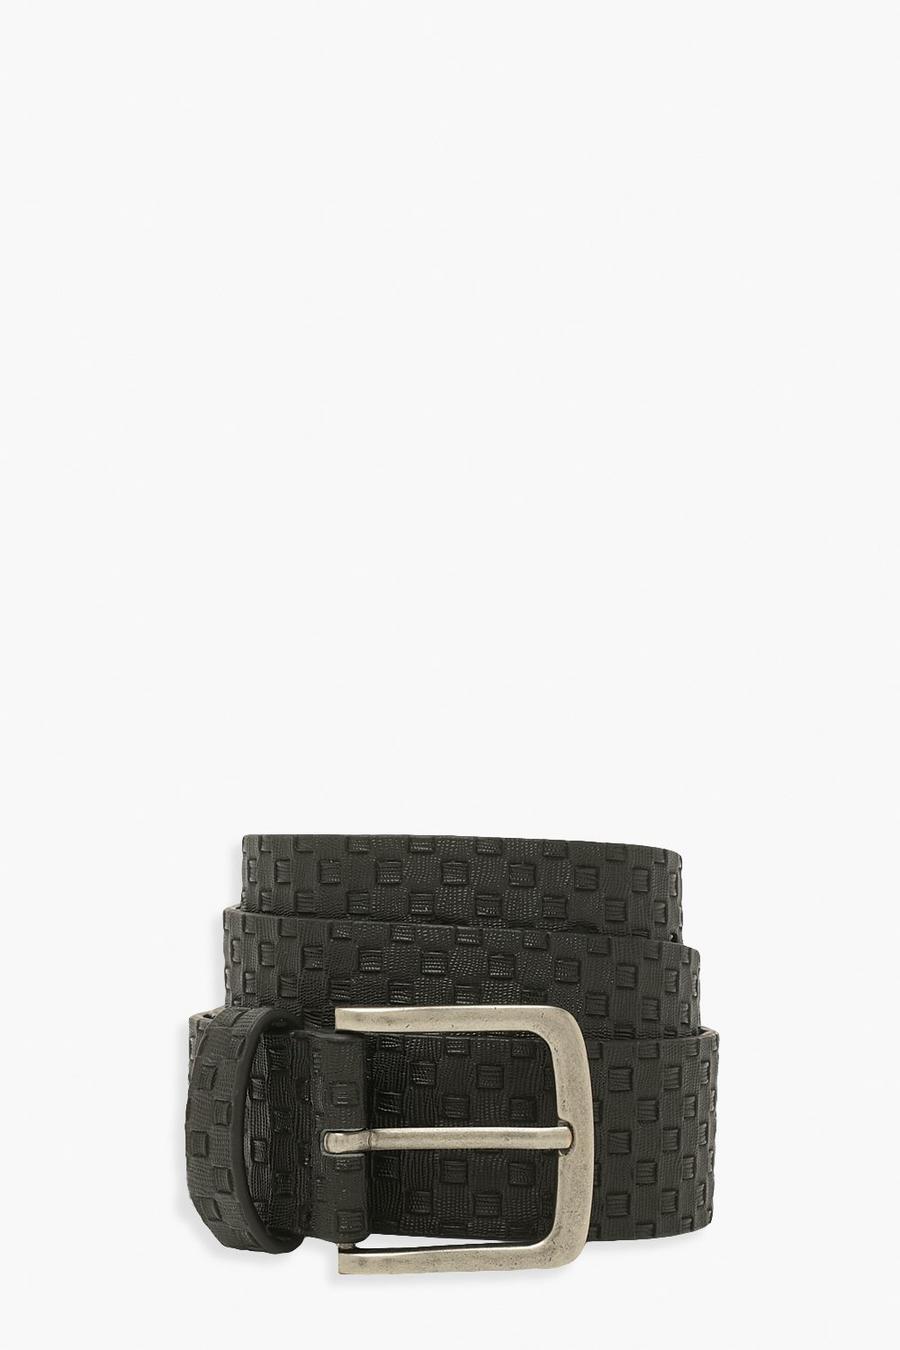 Black Woven Pattern Pu Belt